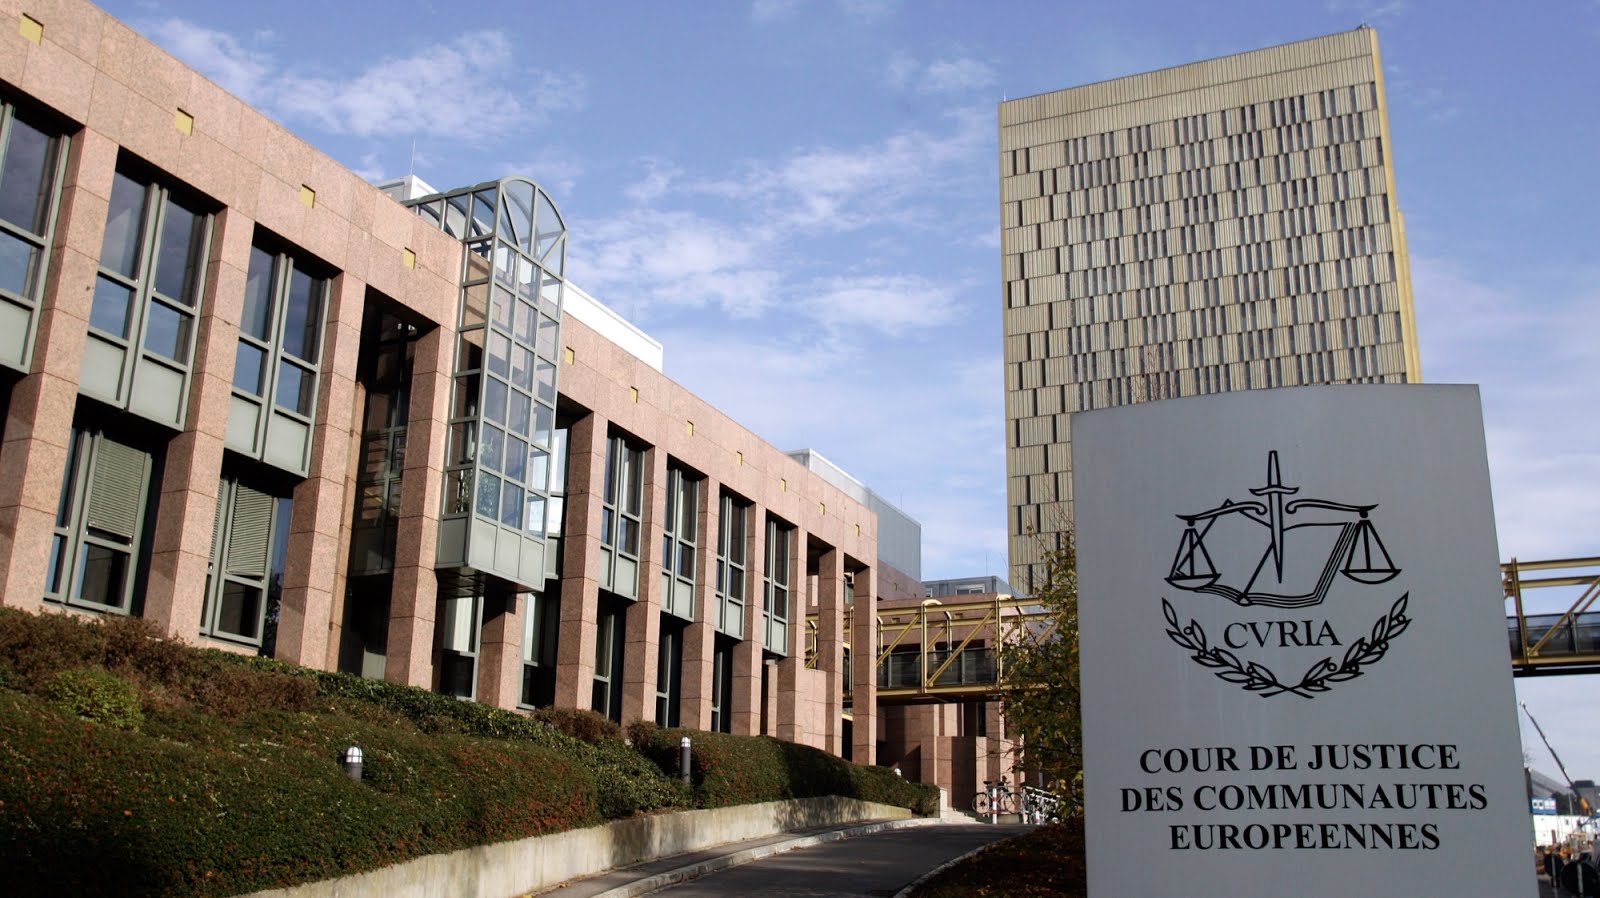 La primera instancia judicial de la UE exigió que los magistrados se reintegren inmediatamente a sus respectivos cargos